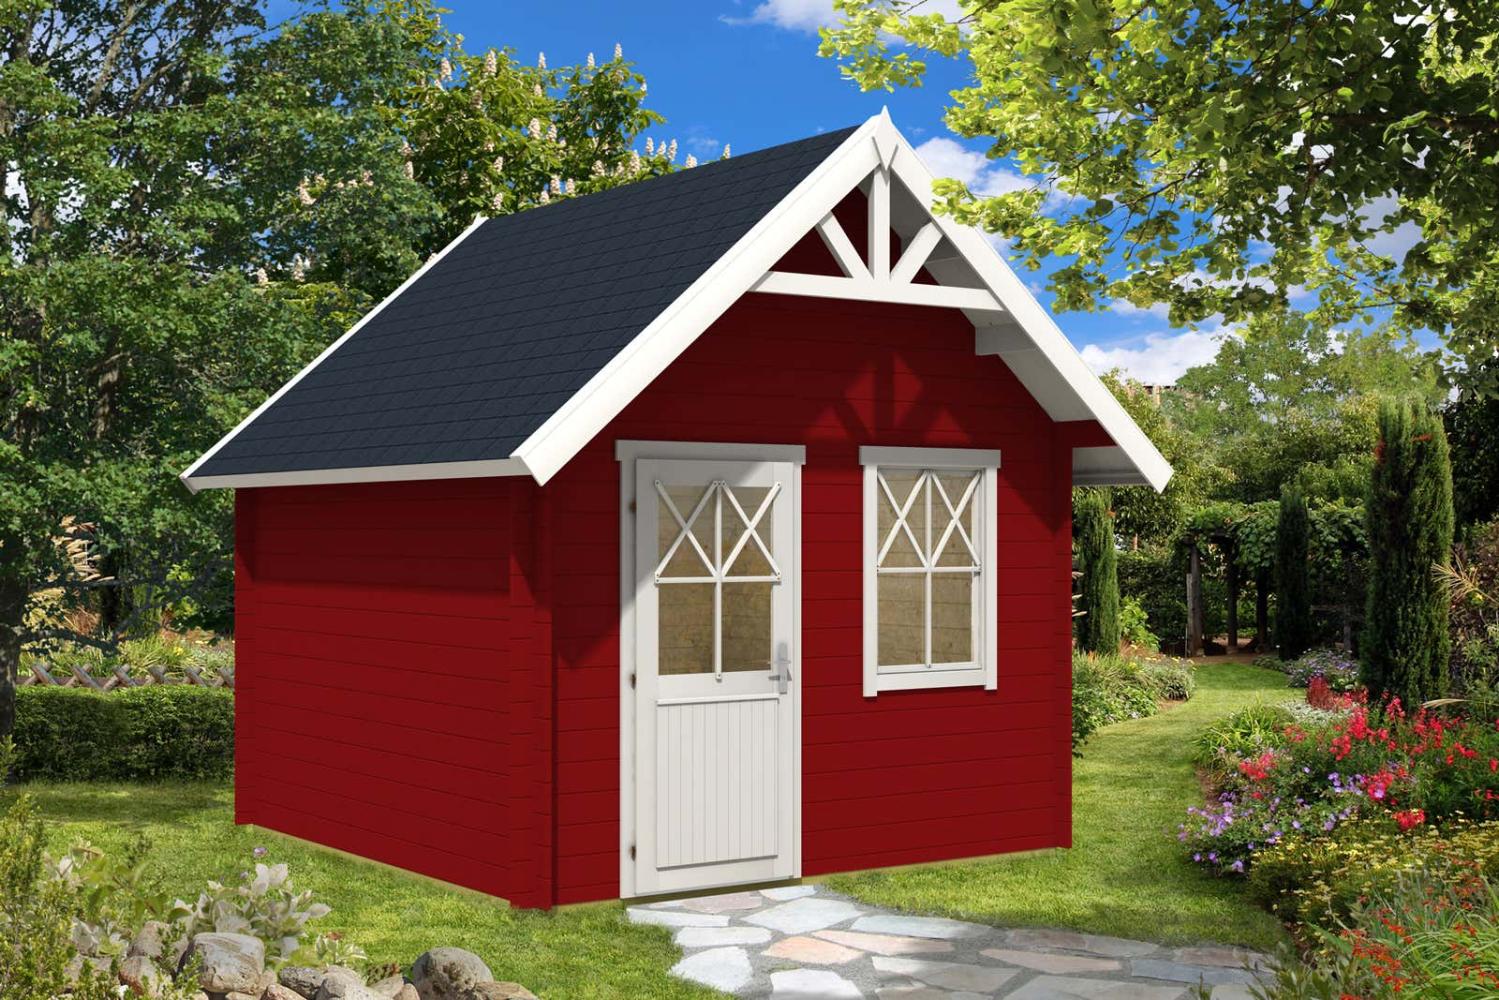 Alpholz Schwedenhaus-28 Gartenhaus aus Holz Holzhaus mit 28 mm Wandstärke Blockbohlenhaus mit Montagematerial Bild 1